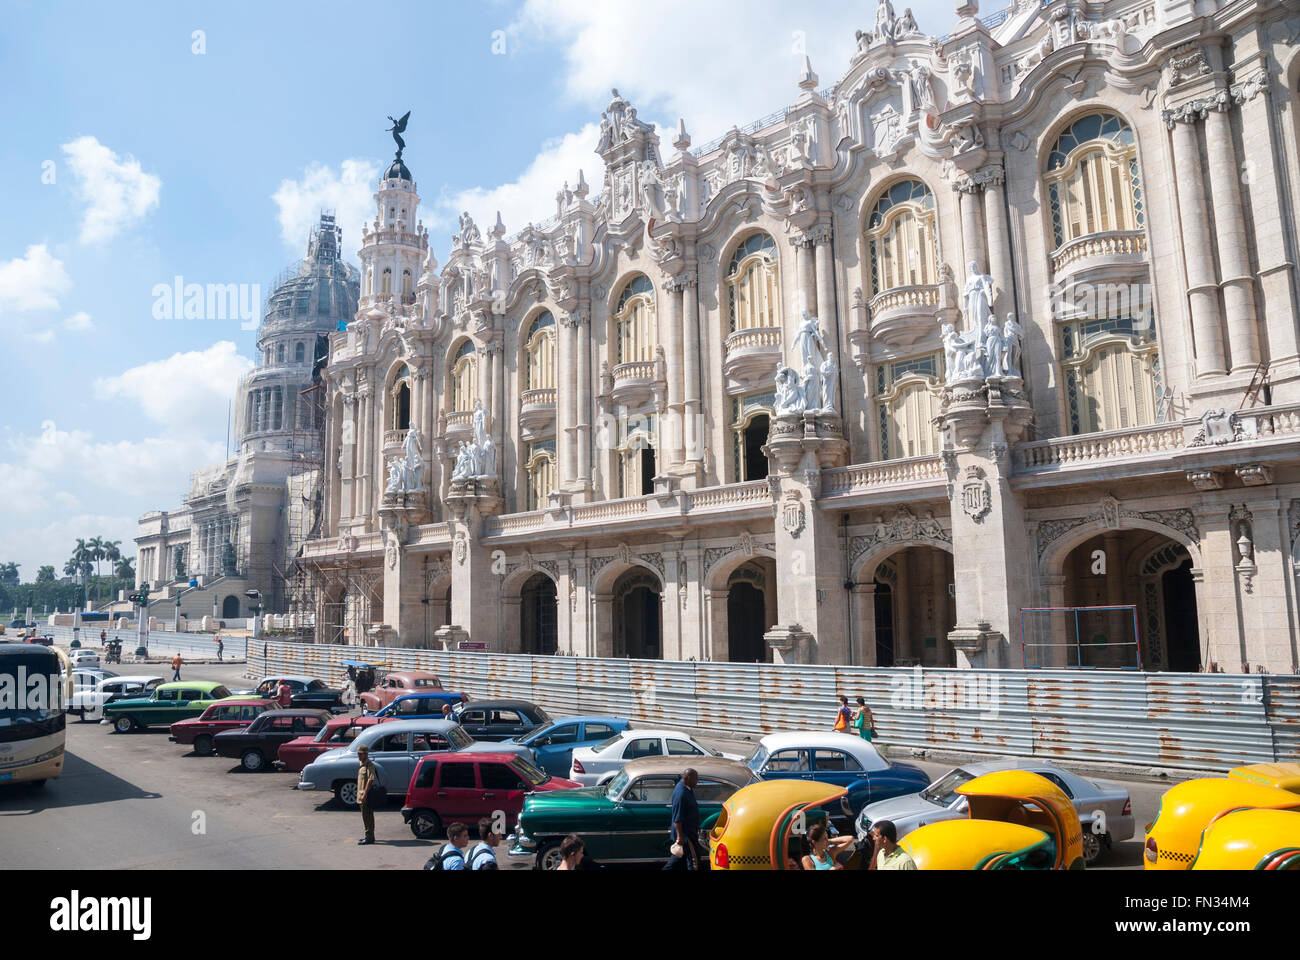 Markante Coco taxis und Oldtimer warten Tourismusgeschäft am Paseo del Prado im Zentrum Havanna Kuba Stockfoto